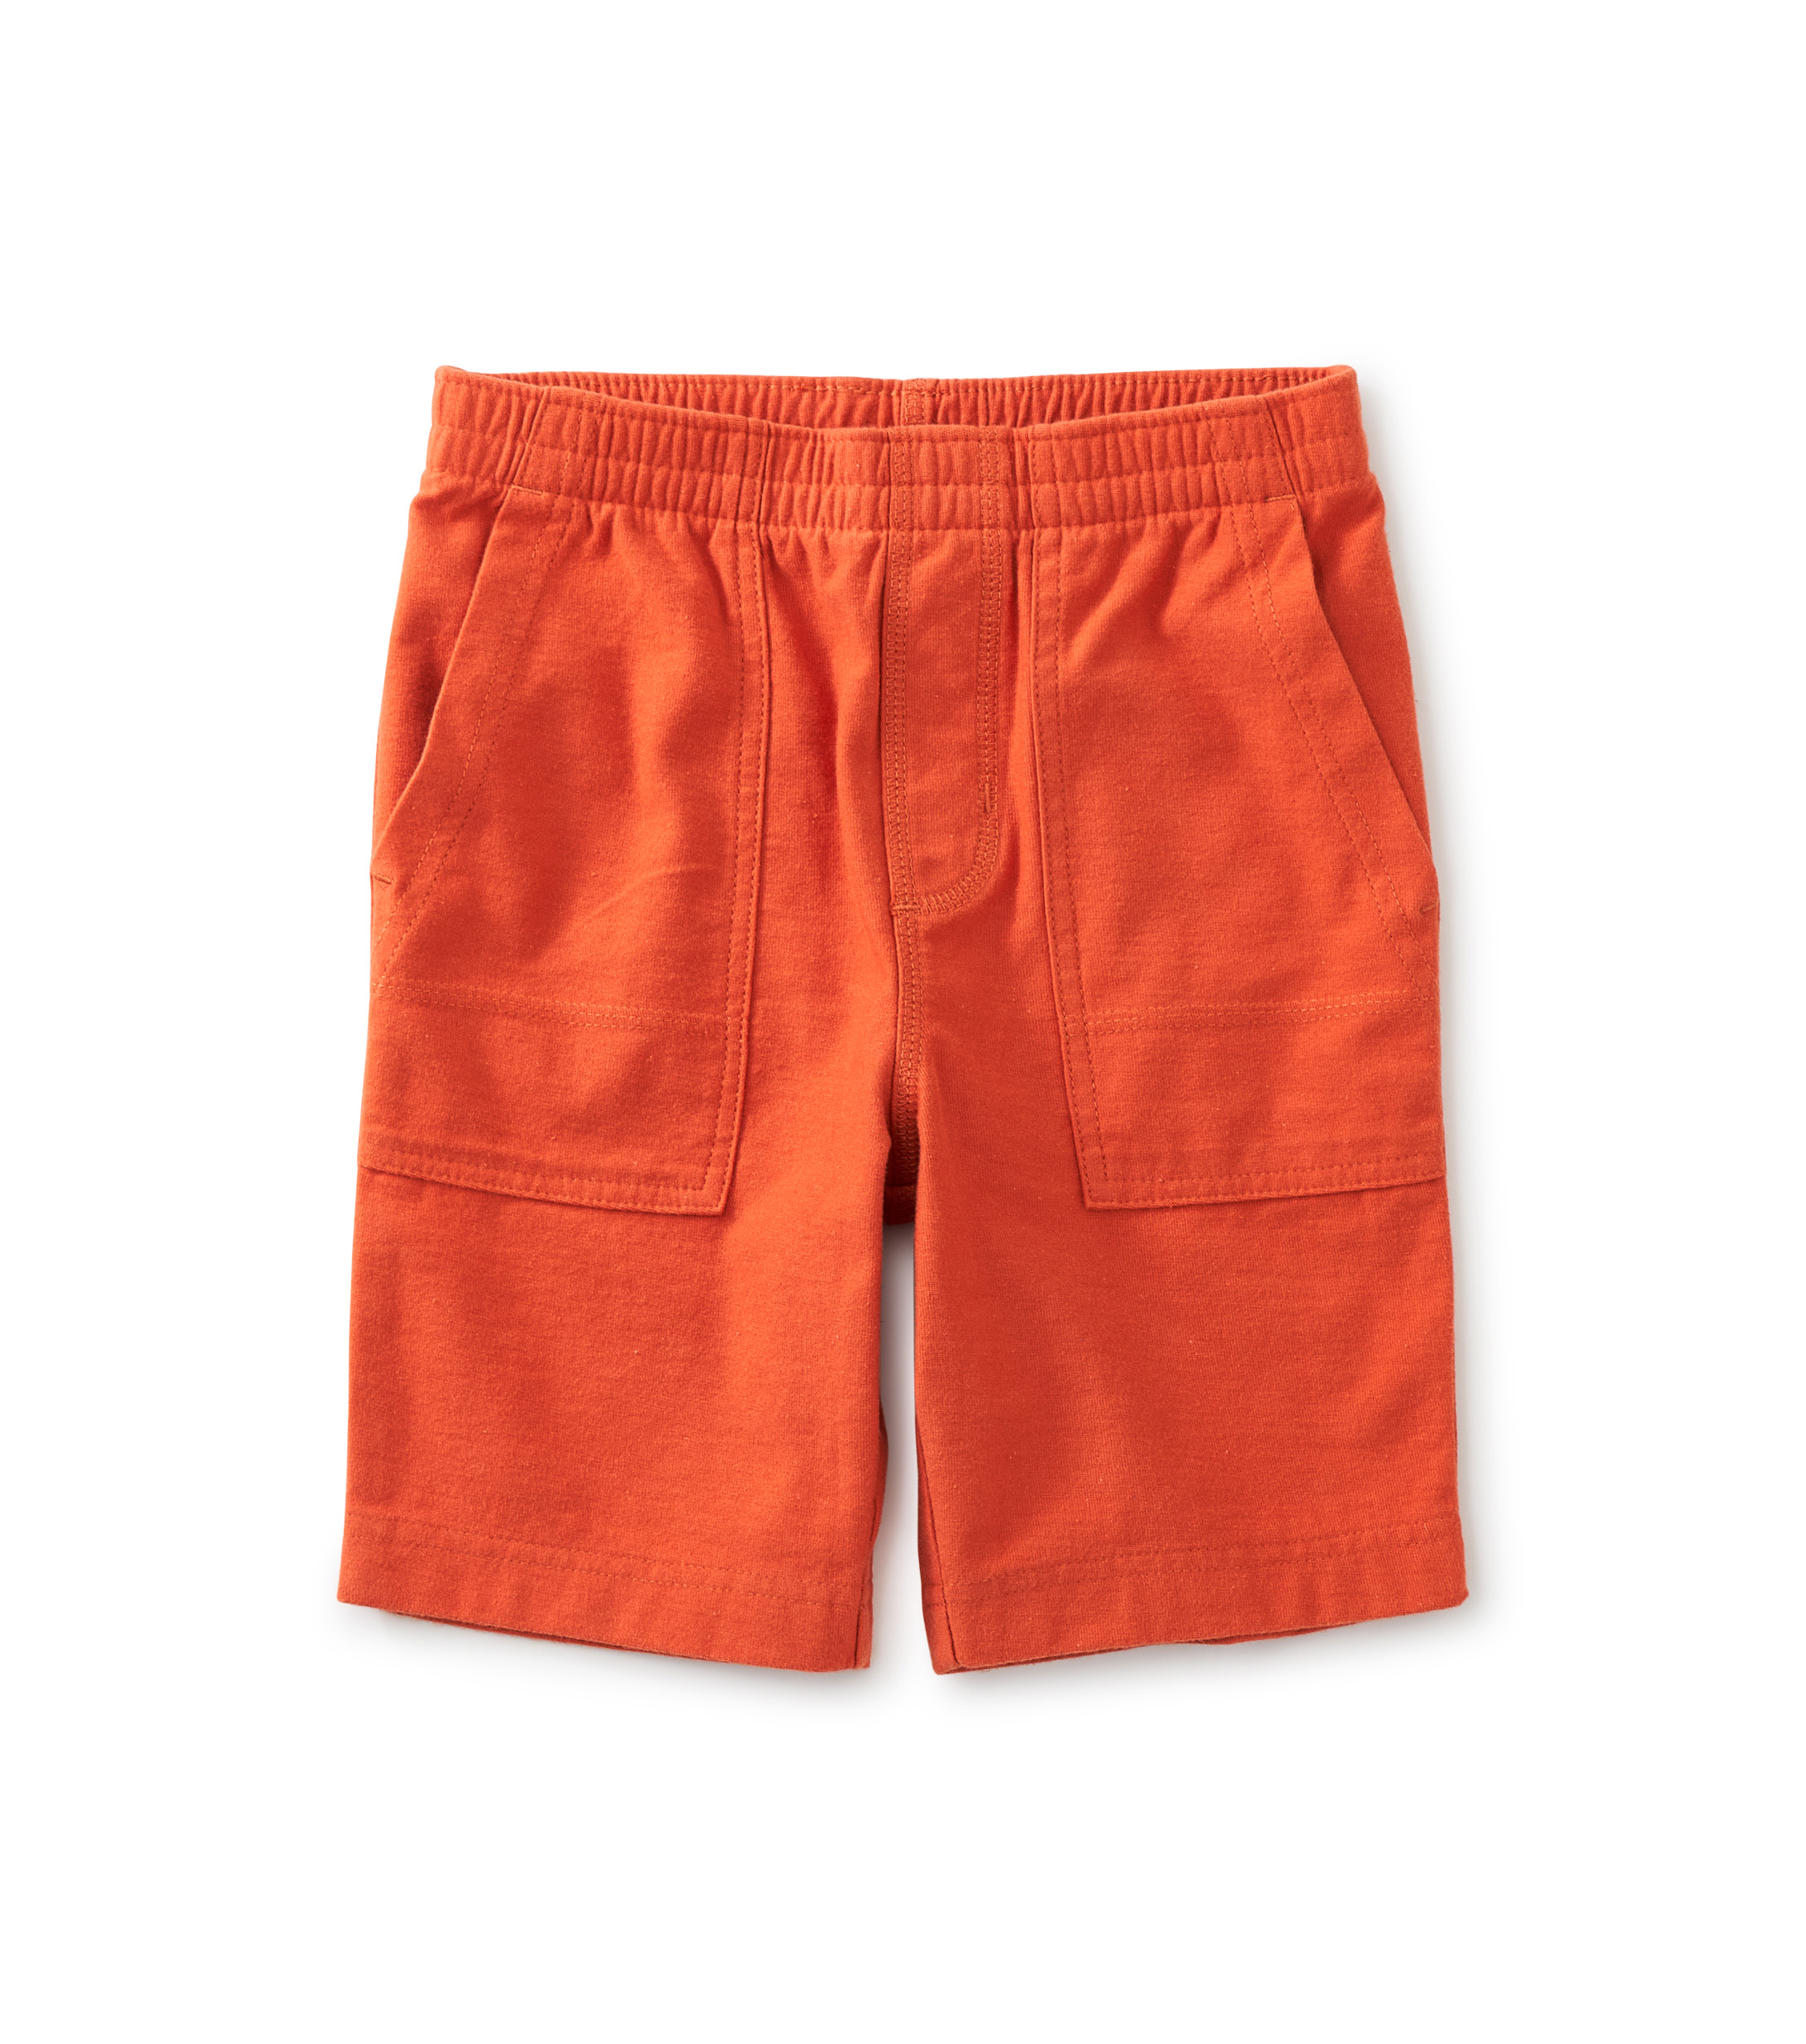 Copper playwear shorts 1